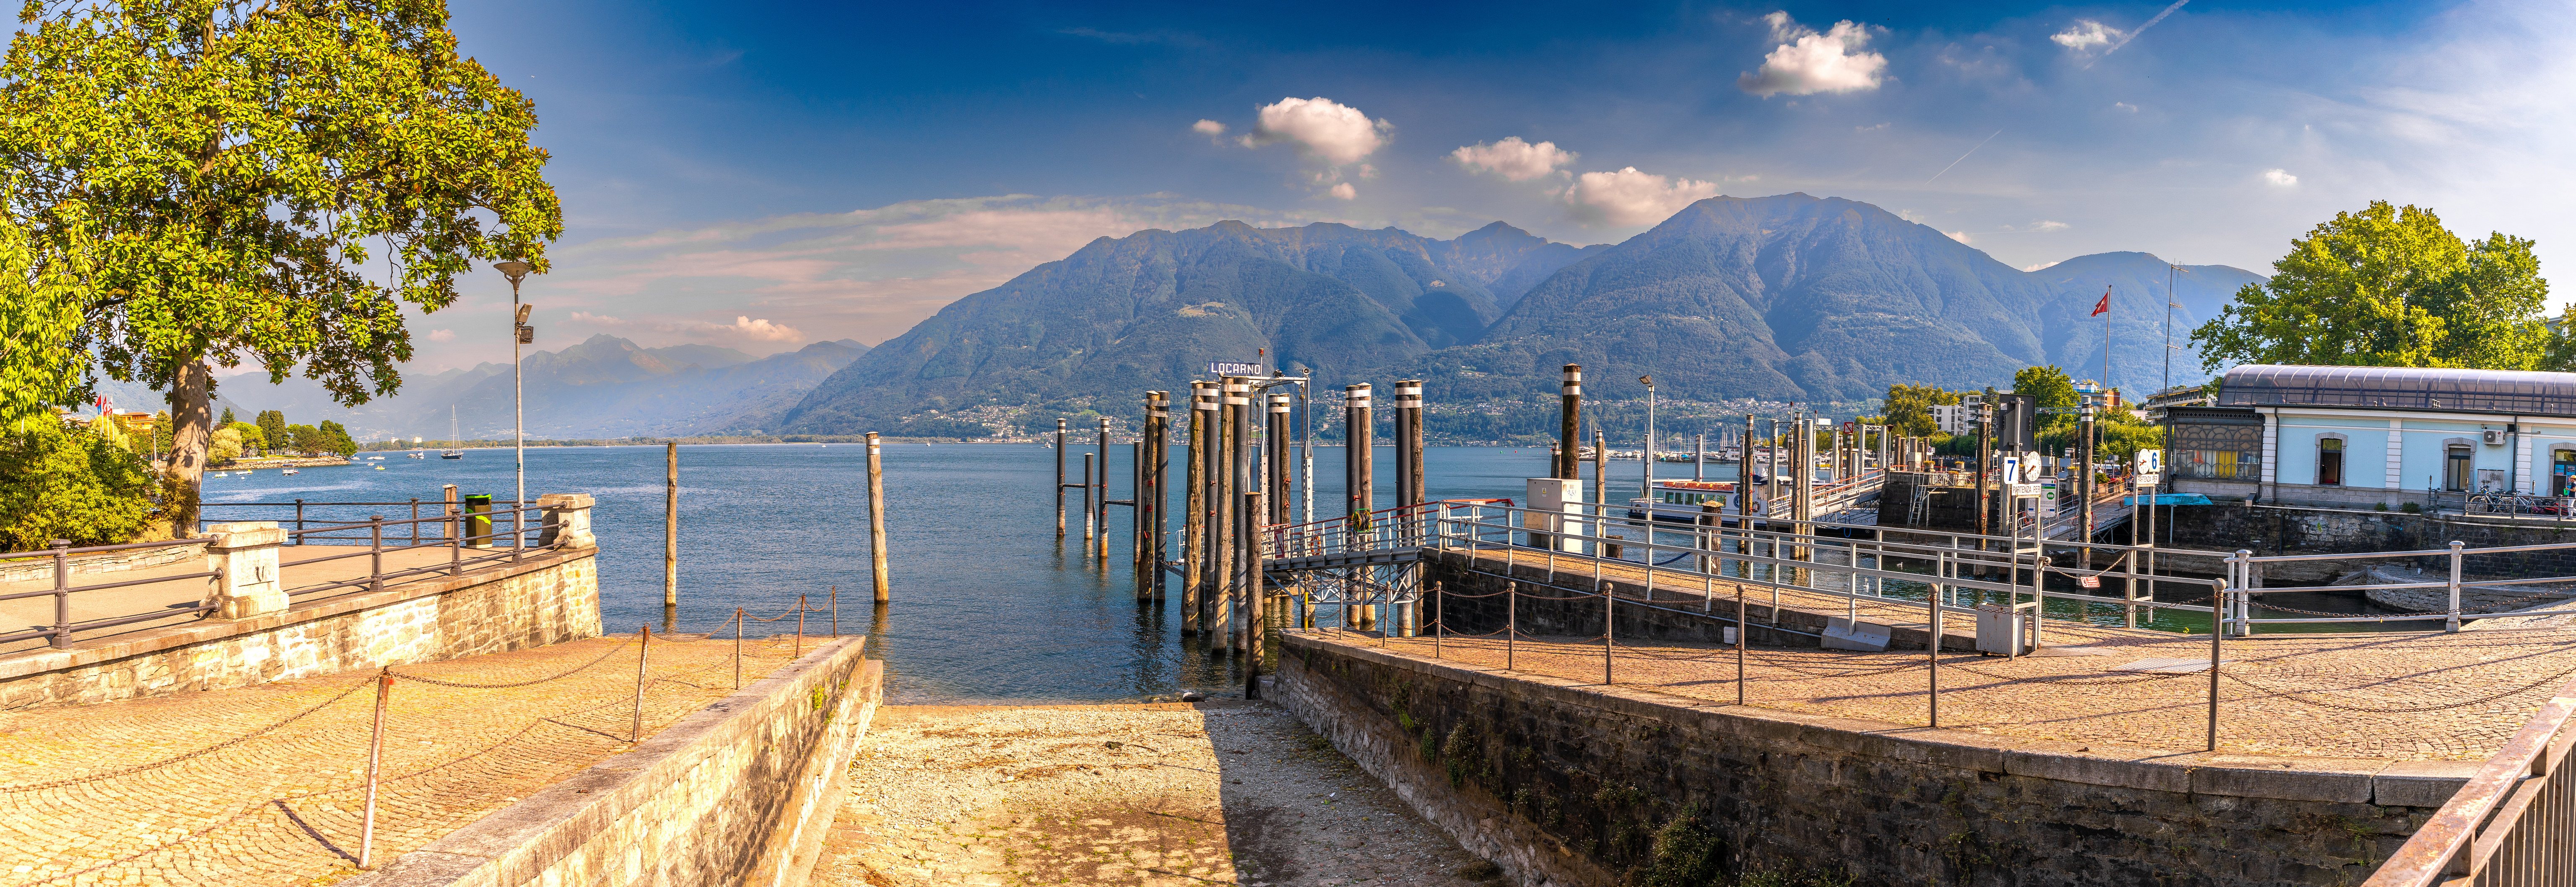 Fotos von Italien Lago Maggiore, Ticino Berg Natur See Seebrücke 6144x2115 Gebirge Bootssteg Schiffsanleger